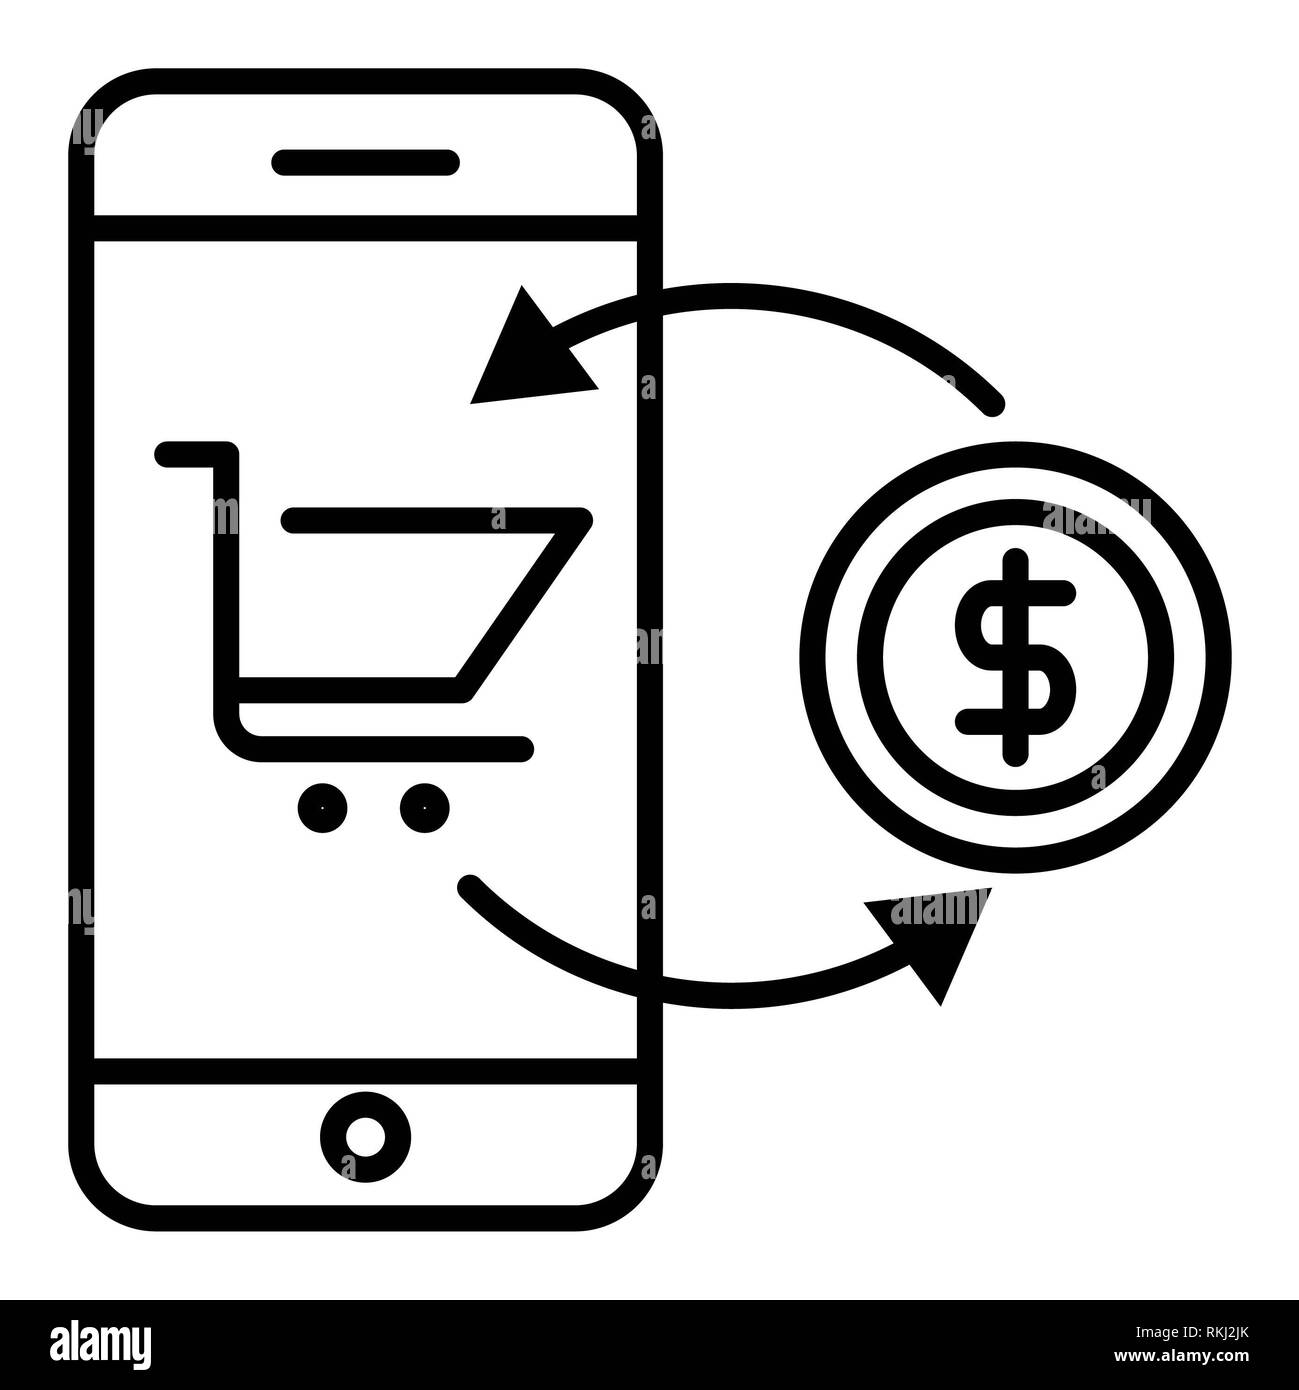 Icono de transacciones online, ilustración vectorial, esquema de E-commerce Foto de stock